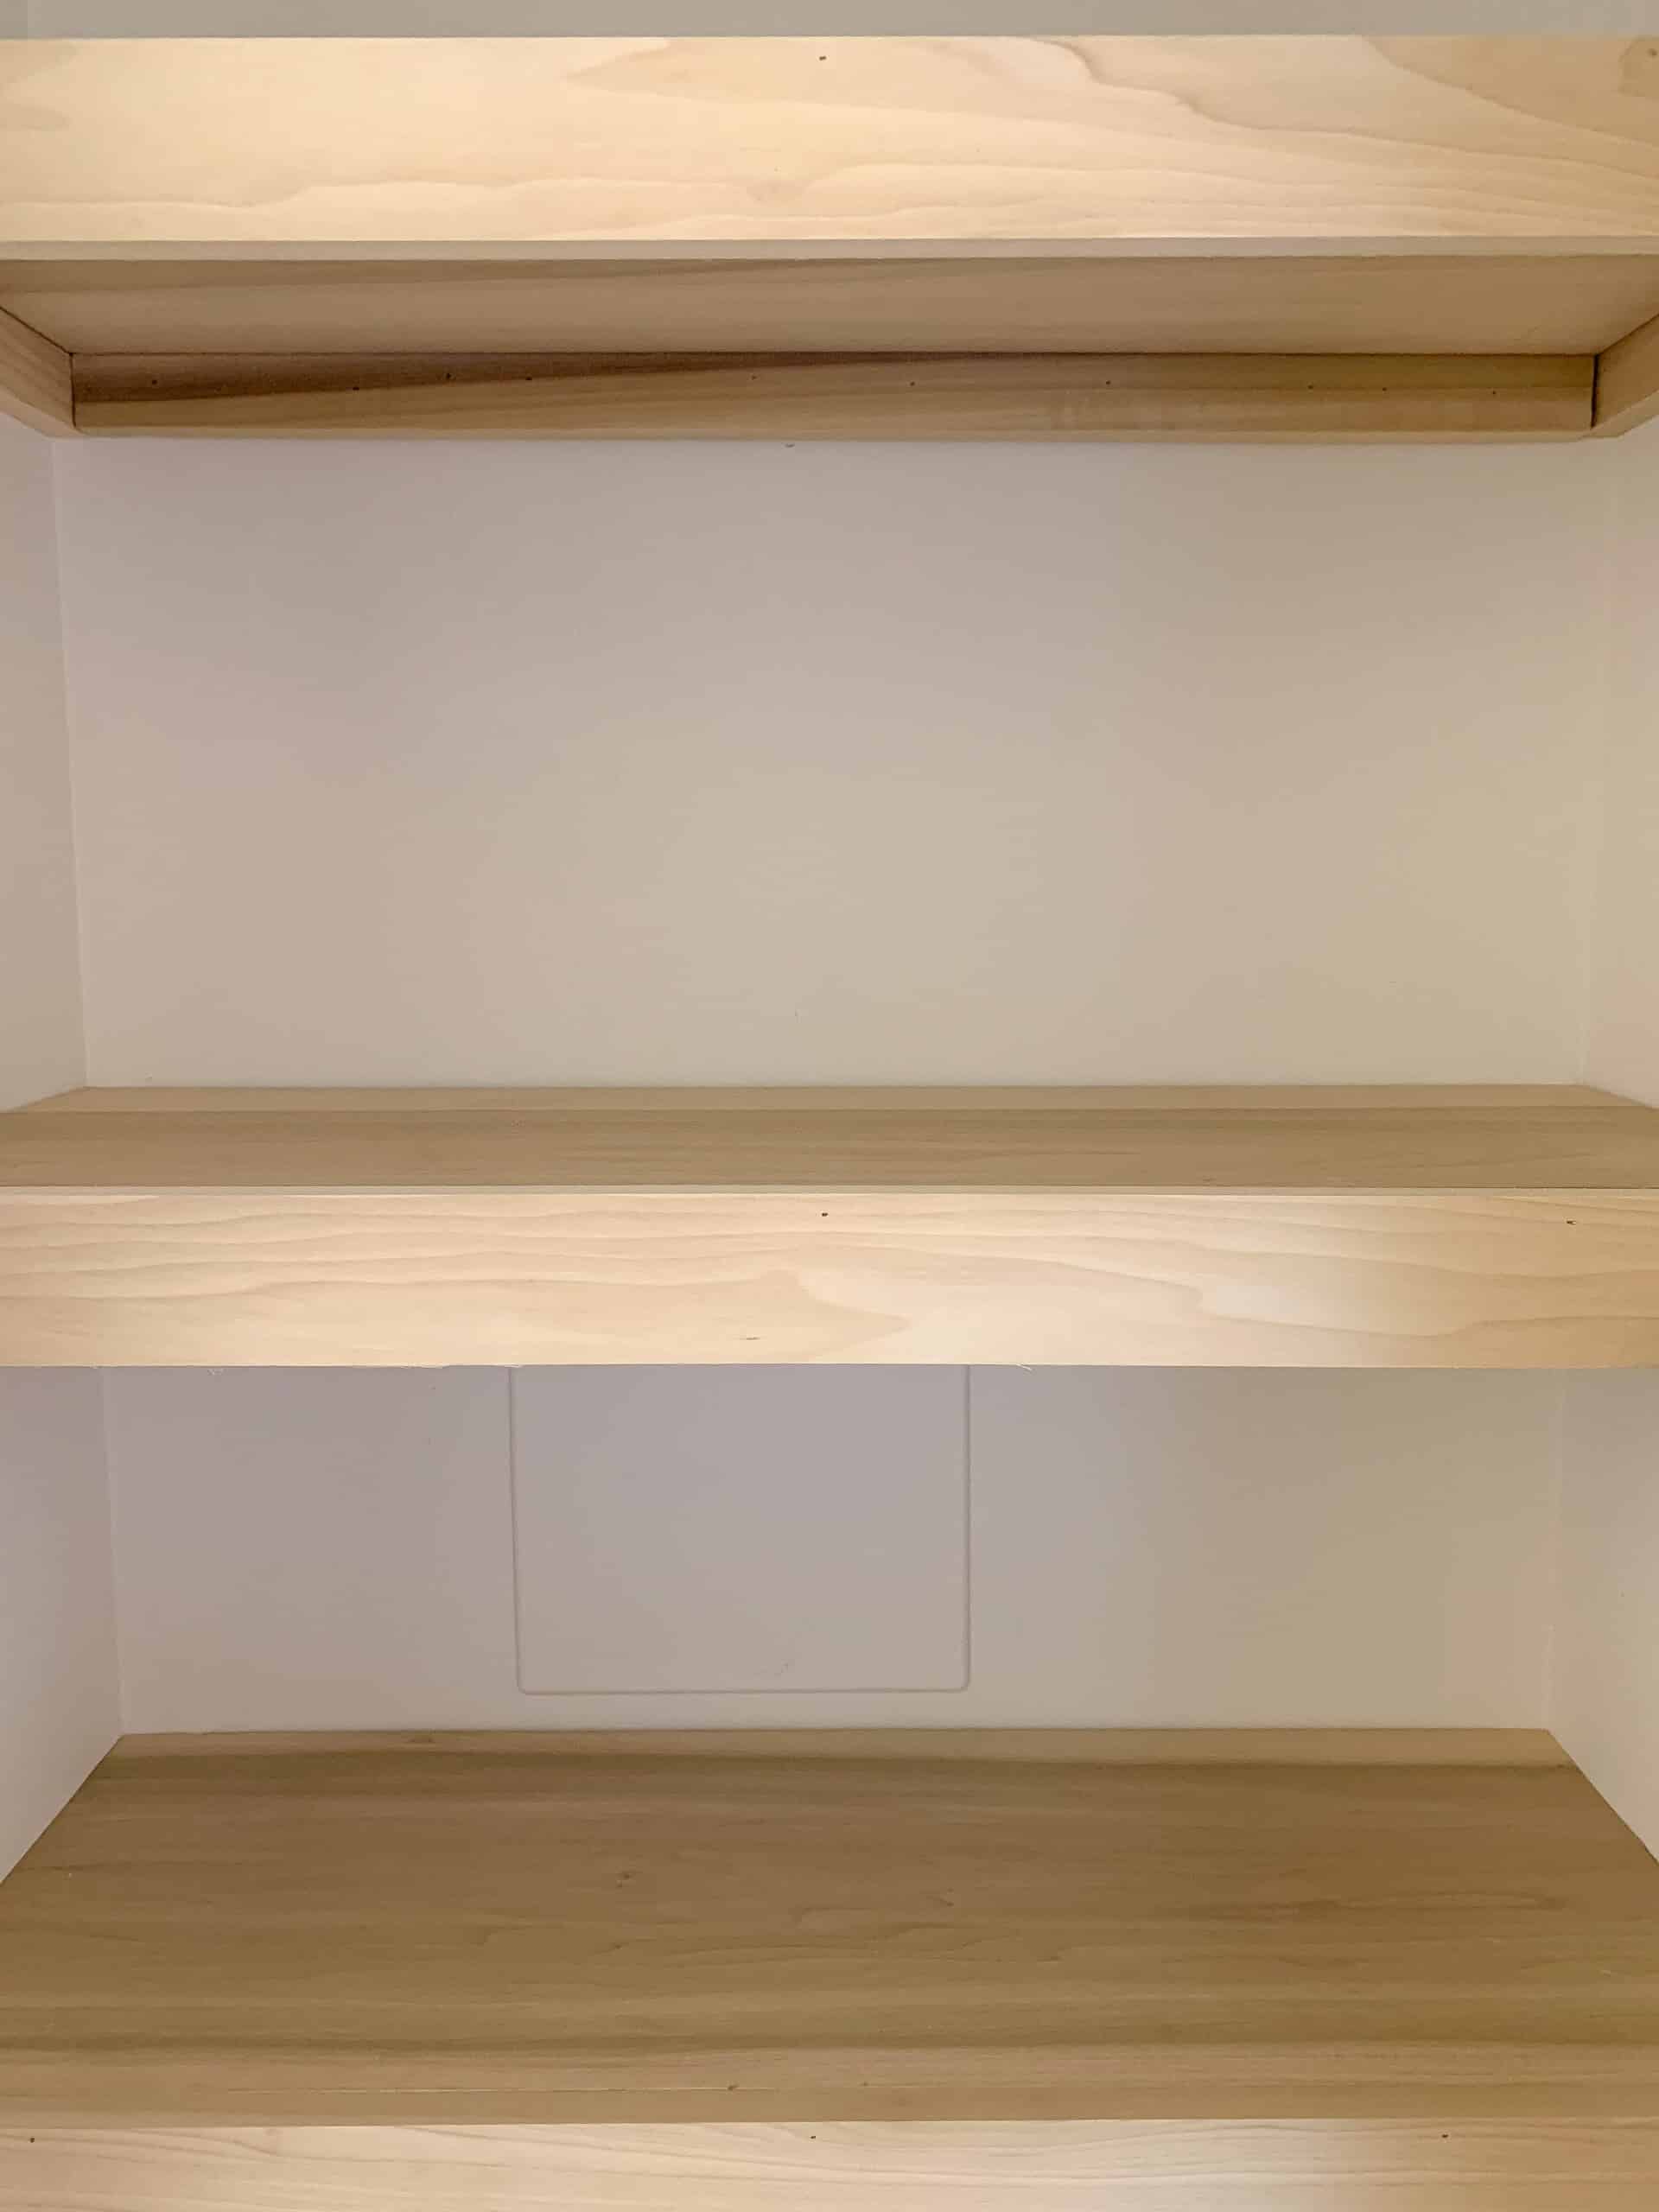 Easy Diy Closet Shelves Tutorial, Do It Yourself Shelves For Closet